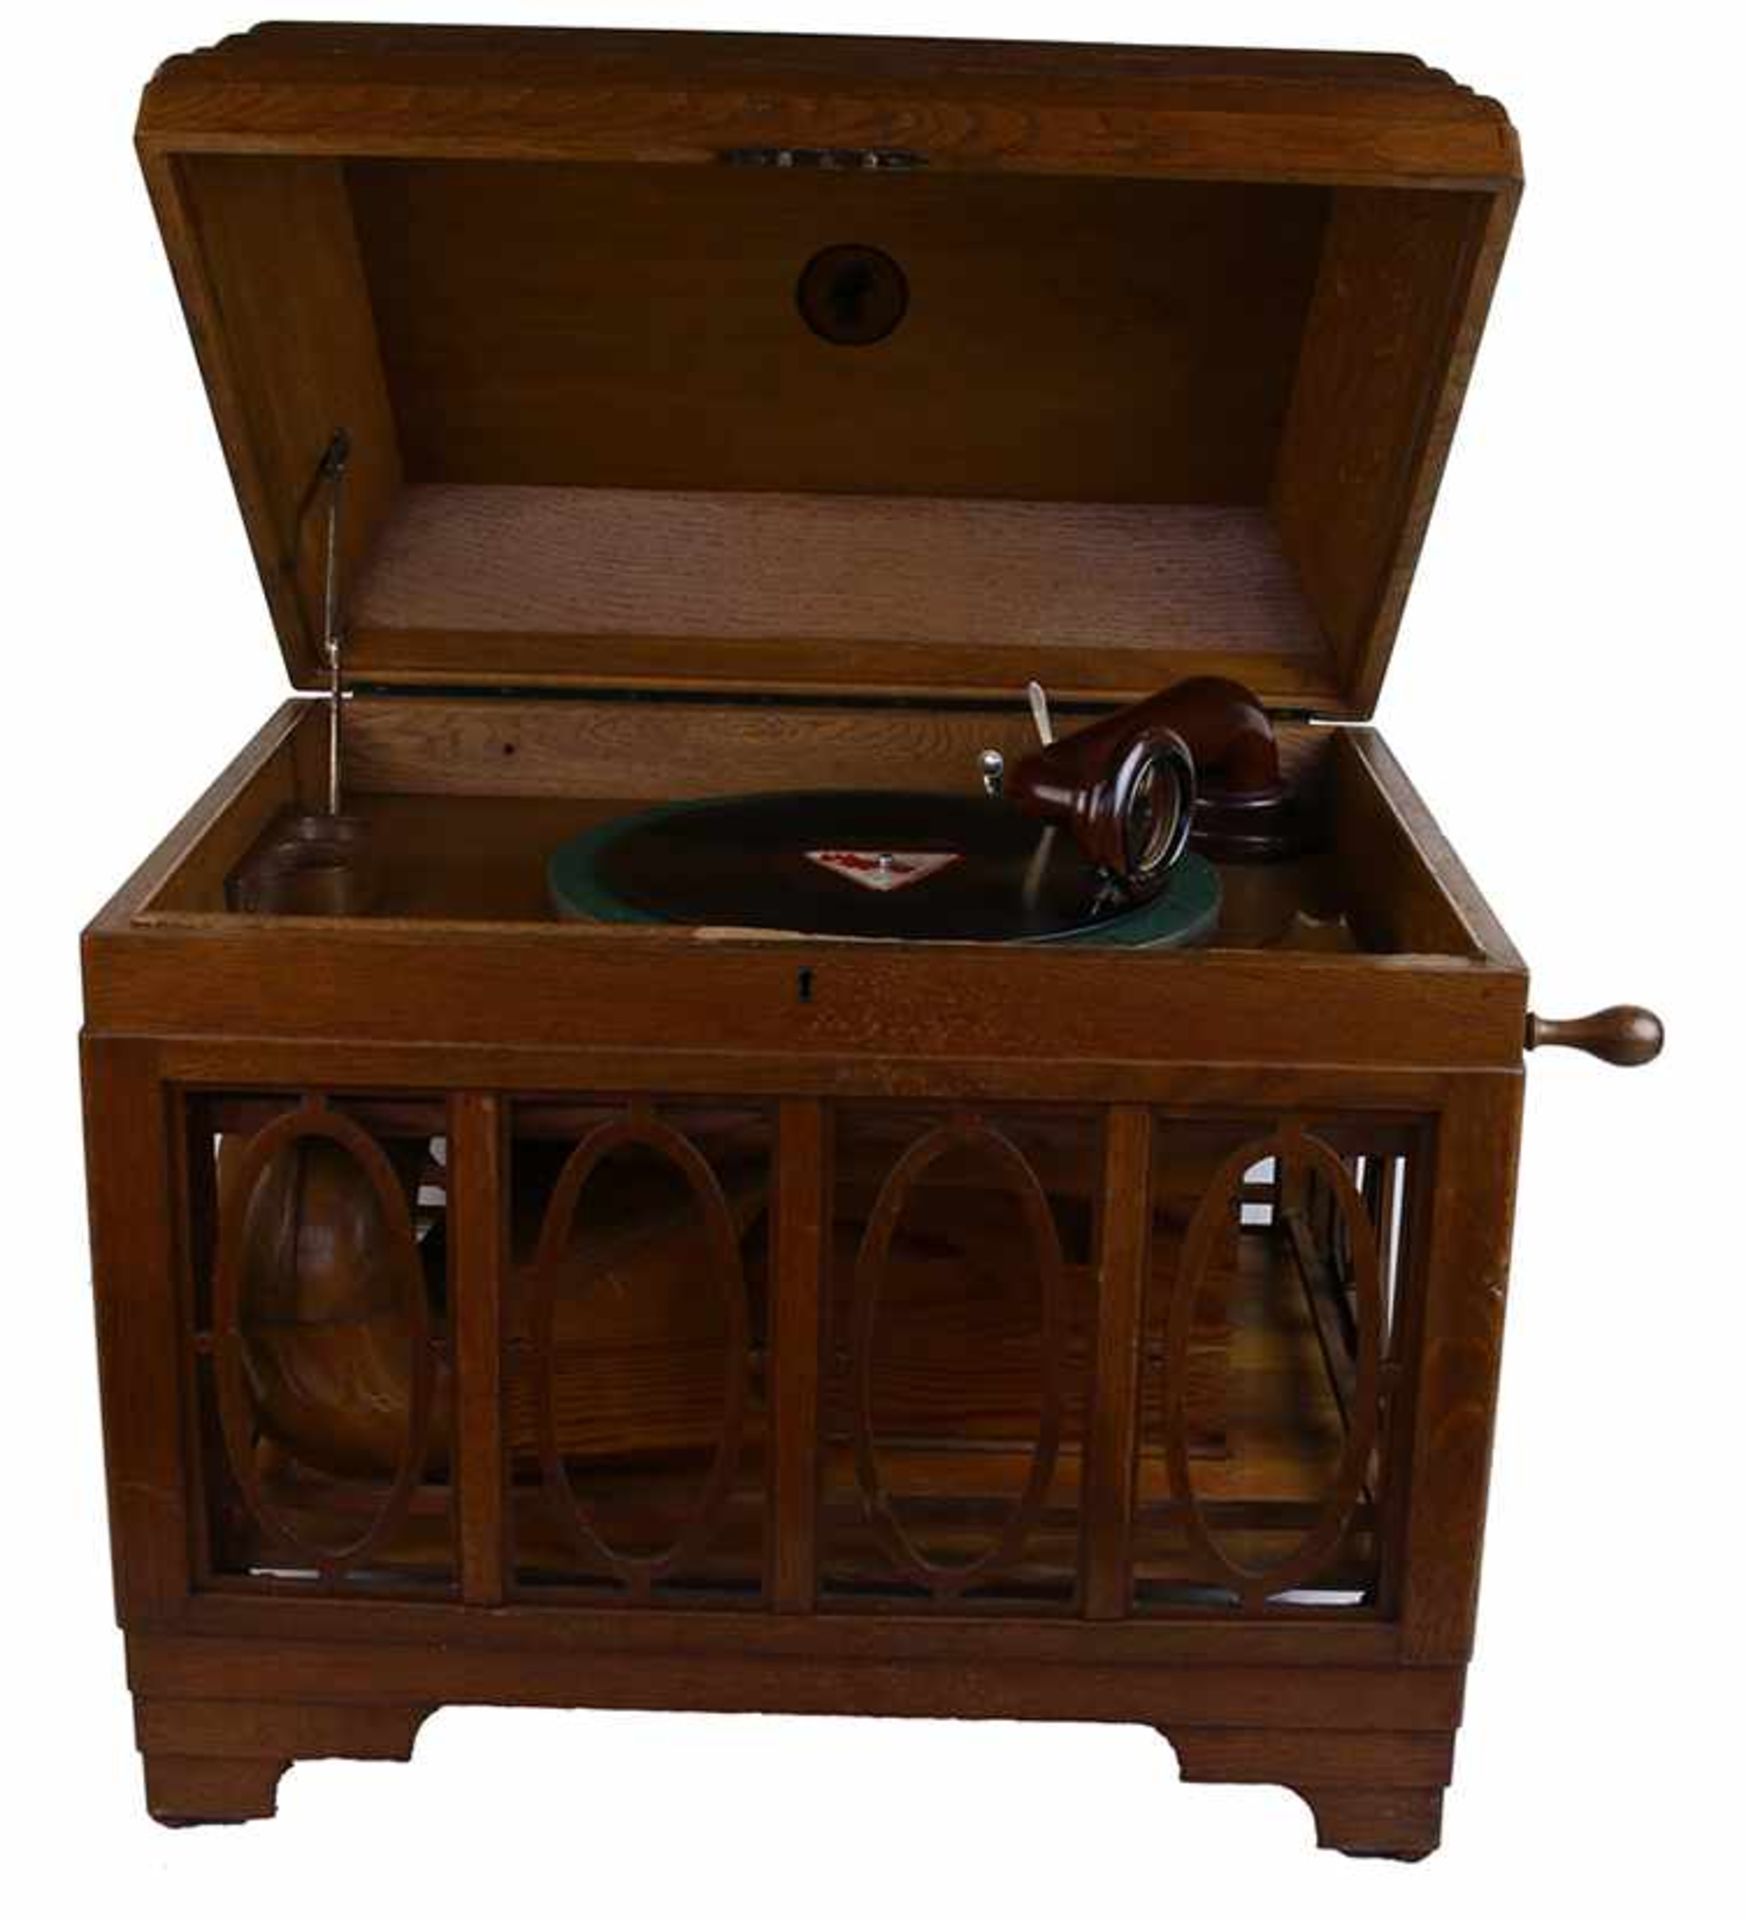 Grammofoon, Vox - Eikenhouten tafelmodel met rondom opengewerkte sierlijst ten behoeve van een